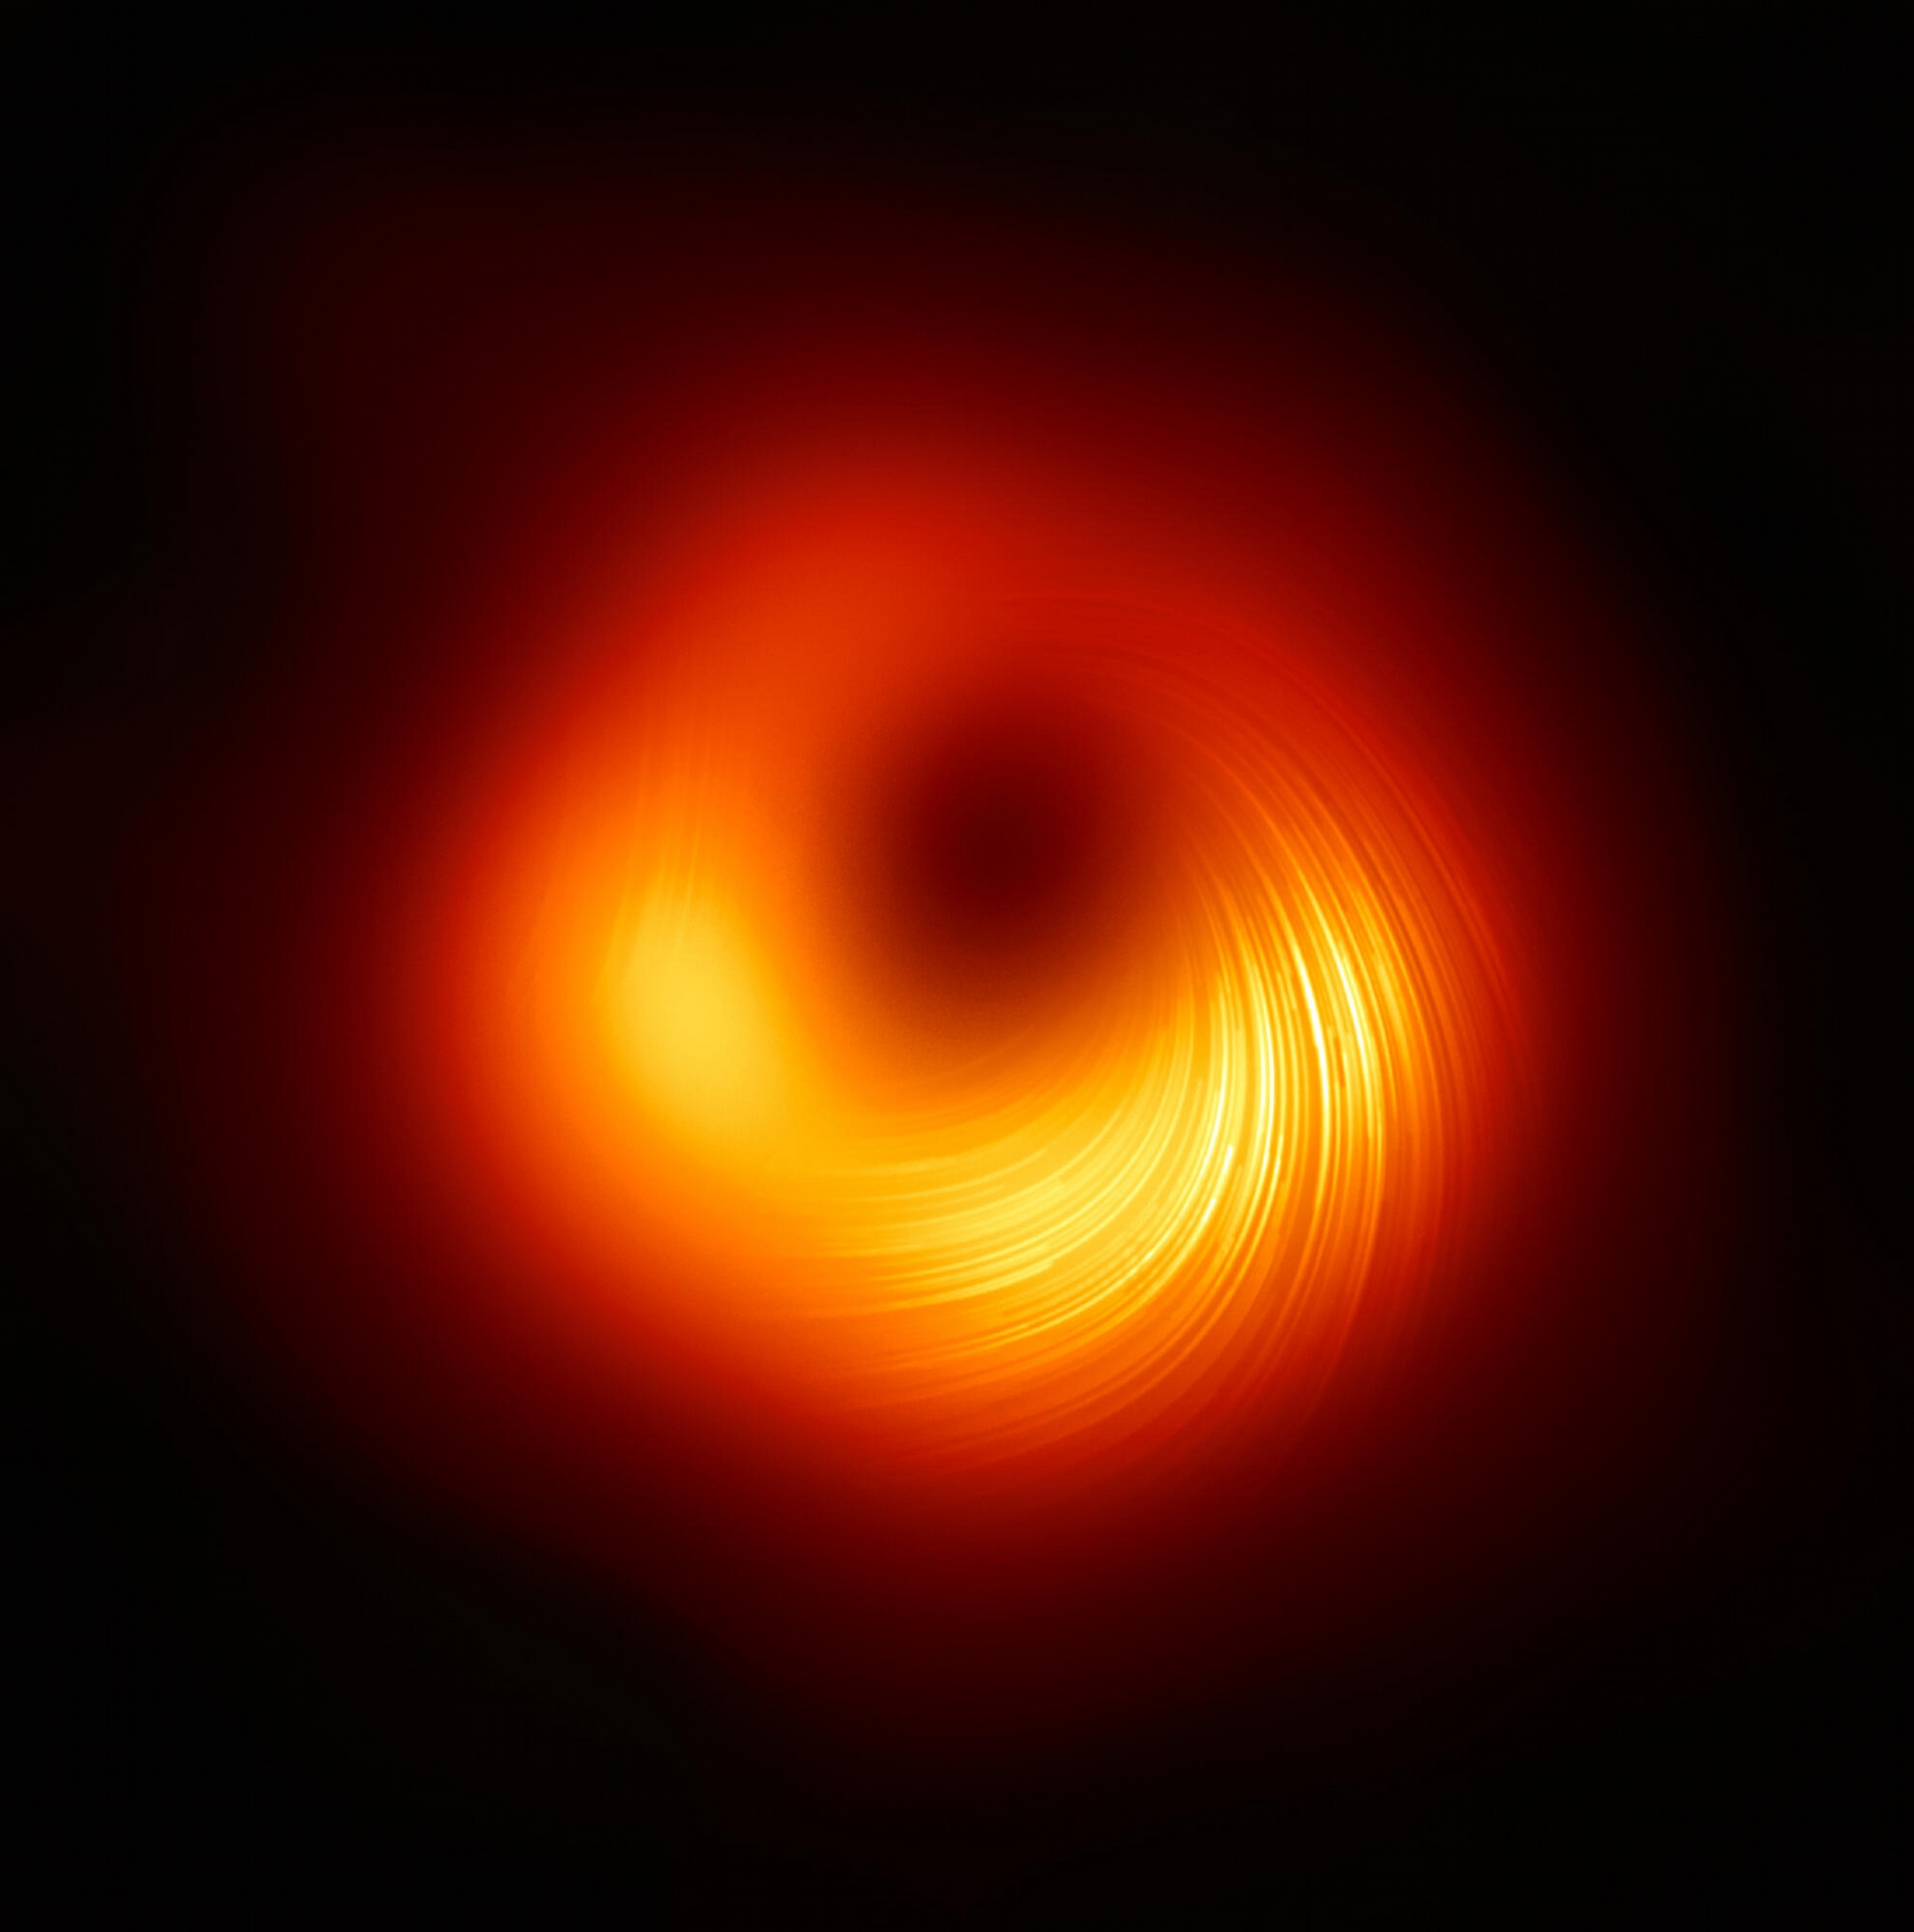 2021 年 3 月事件视界望远镜公布了 M87 星系中心黑洞的偏振光影像，图中的条纹是光的偏振方向。资料来源│EHT Collaboration